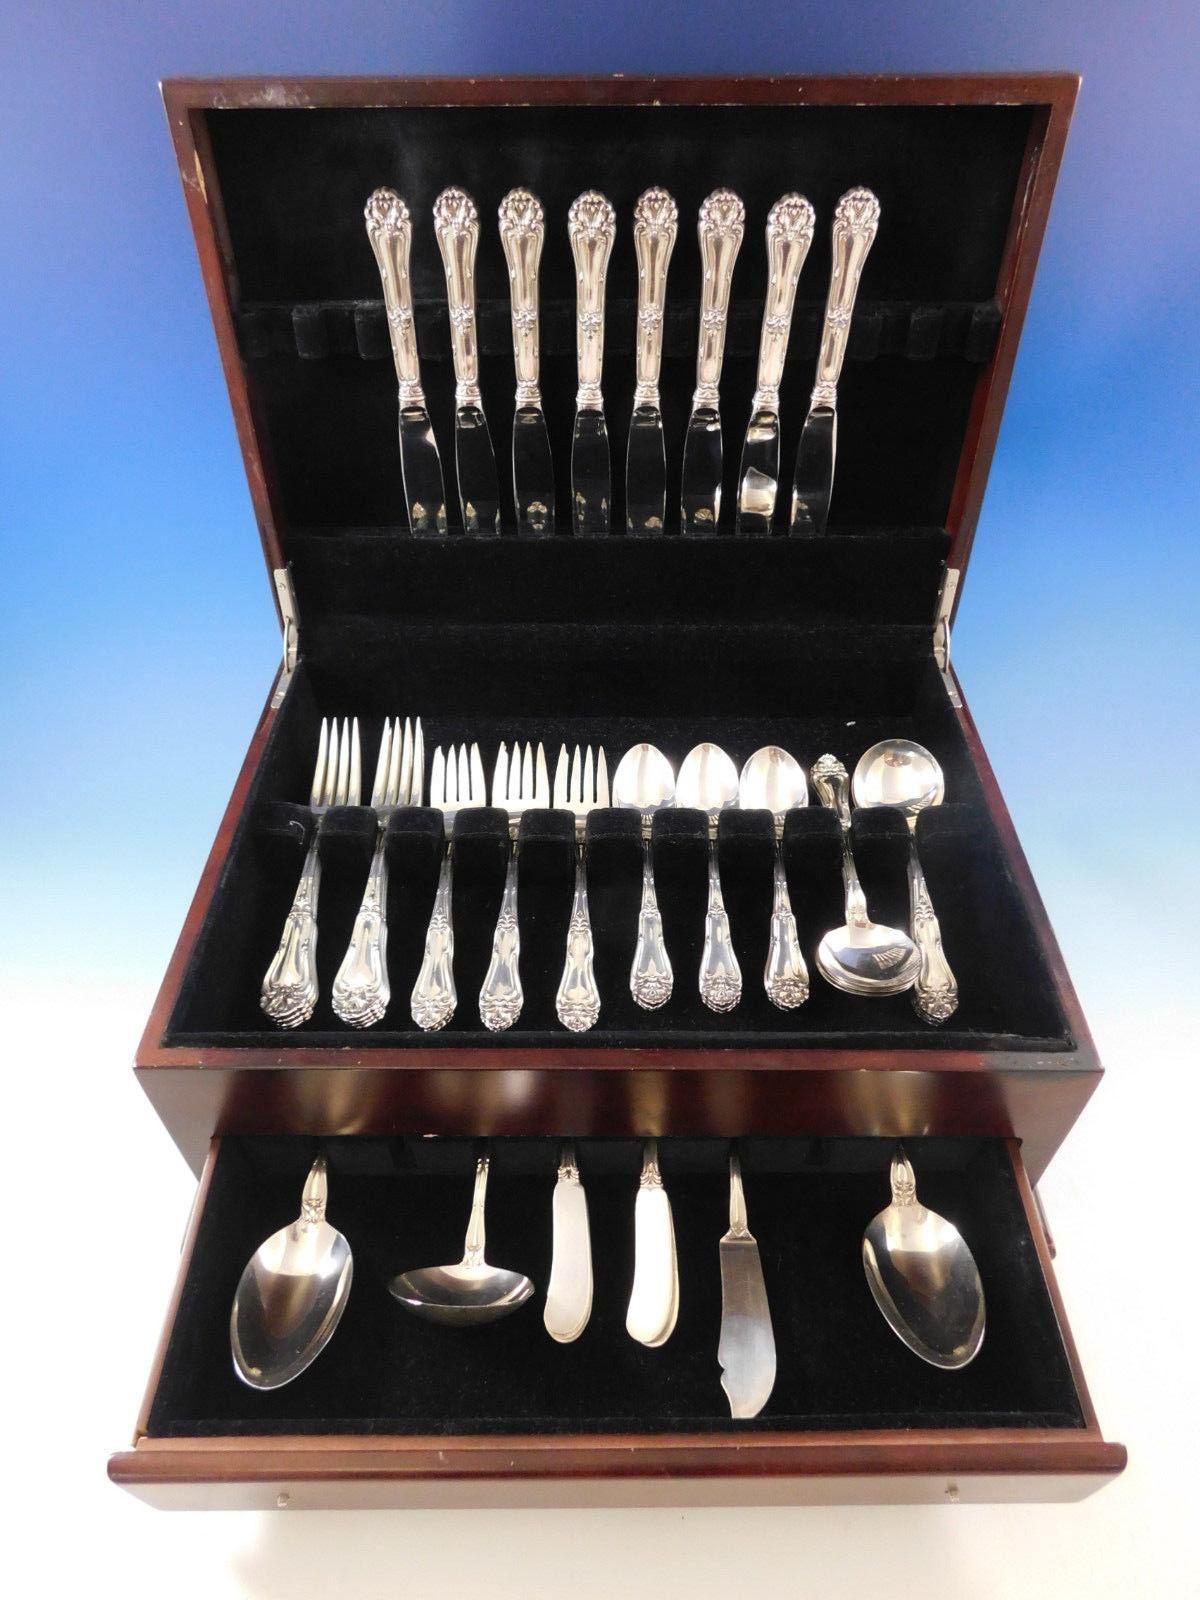 Squisito set di posate in argento Champlain by Amston - 52 pezzi. Questo set comprende:

Otto coltelli, 9